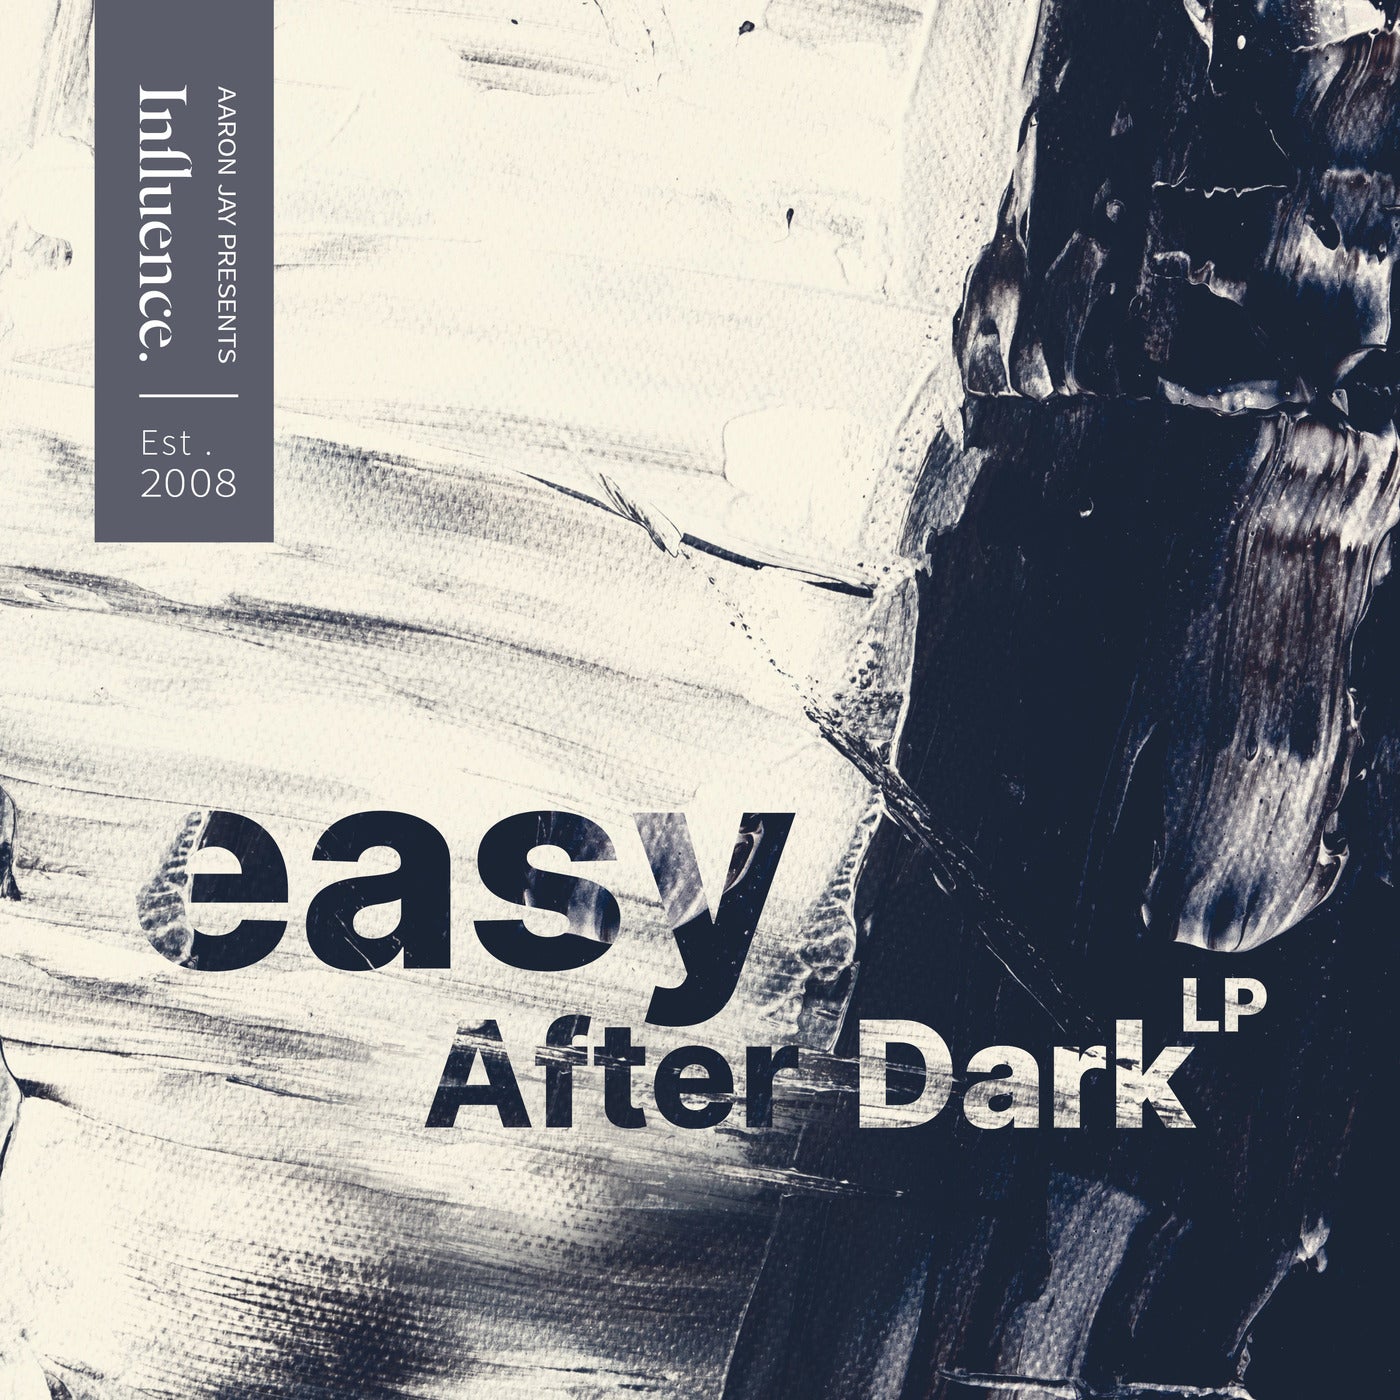 After Dark LP